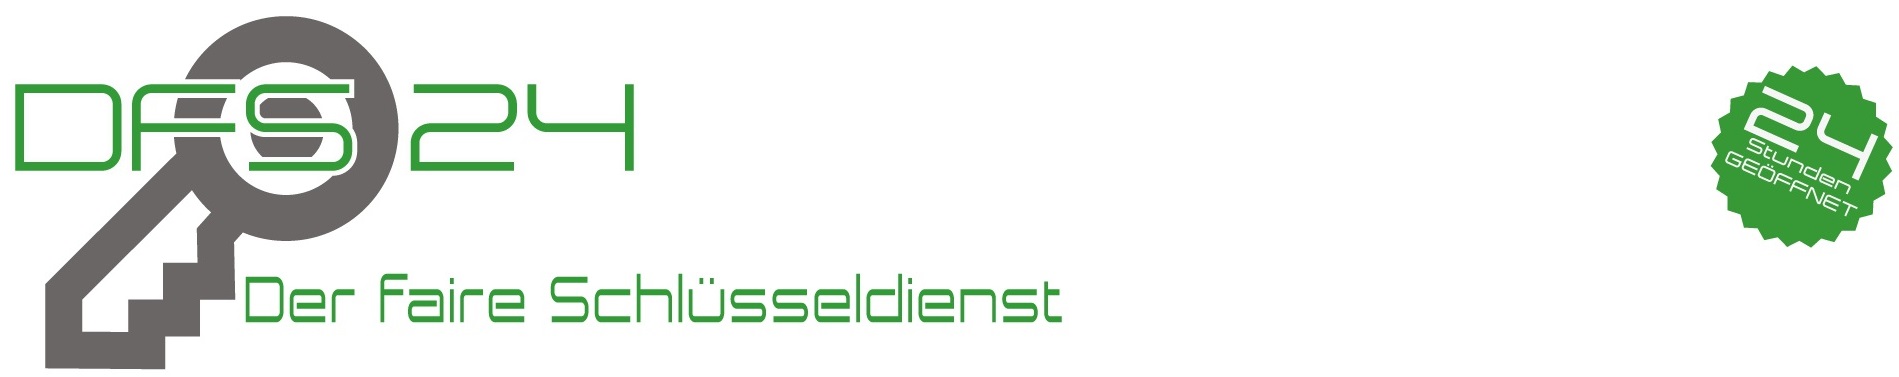 schlüsseldienst hünxe logo